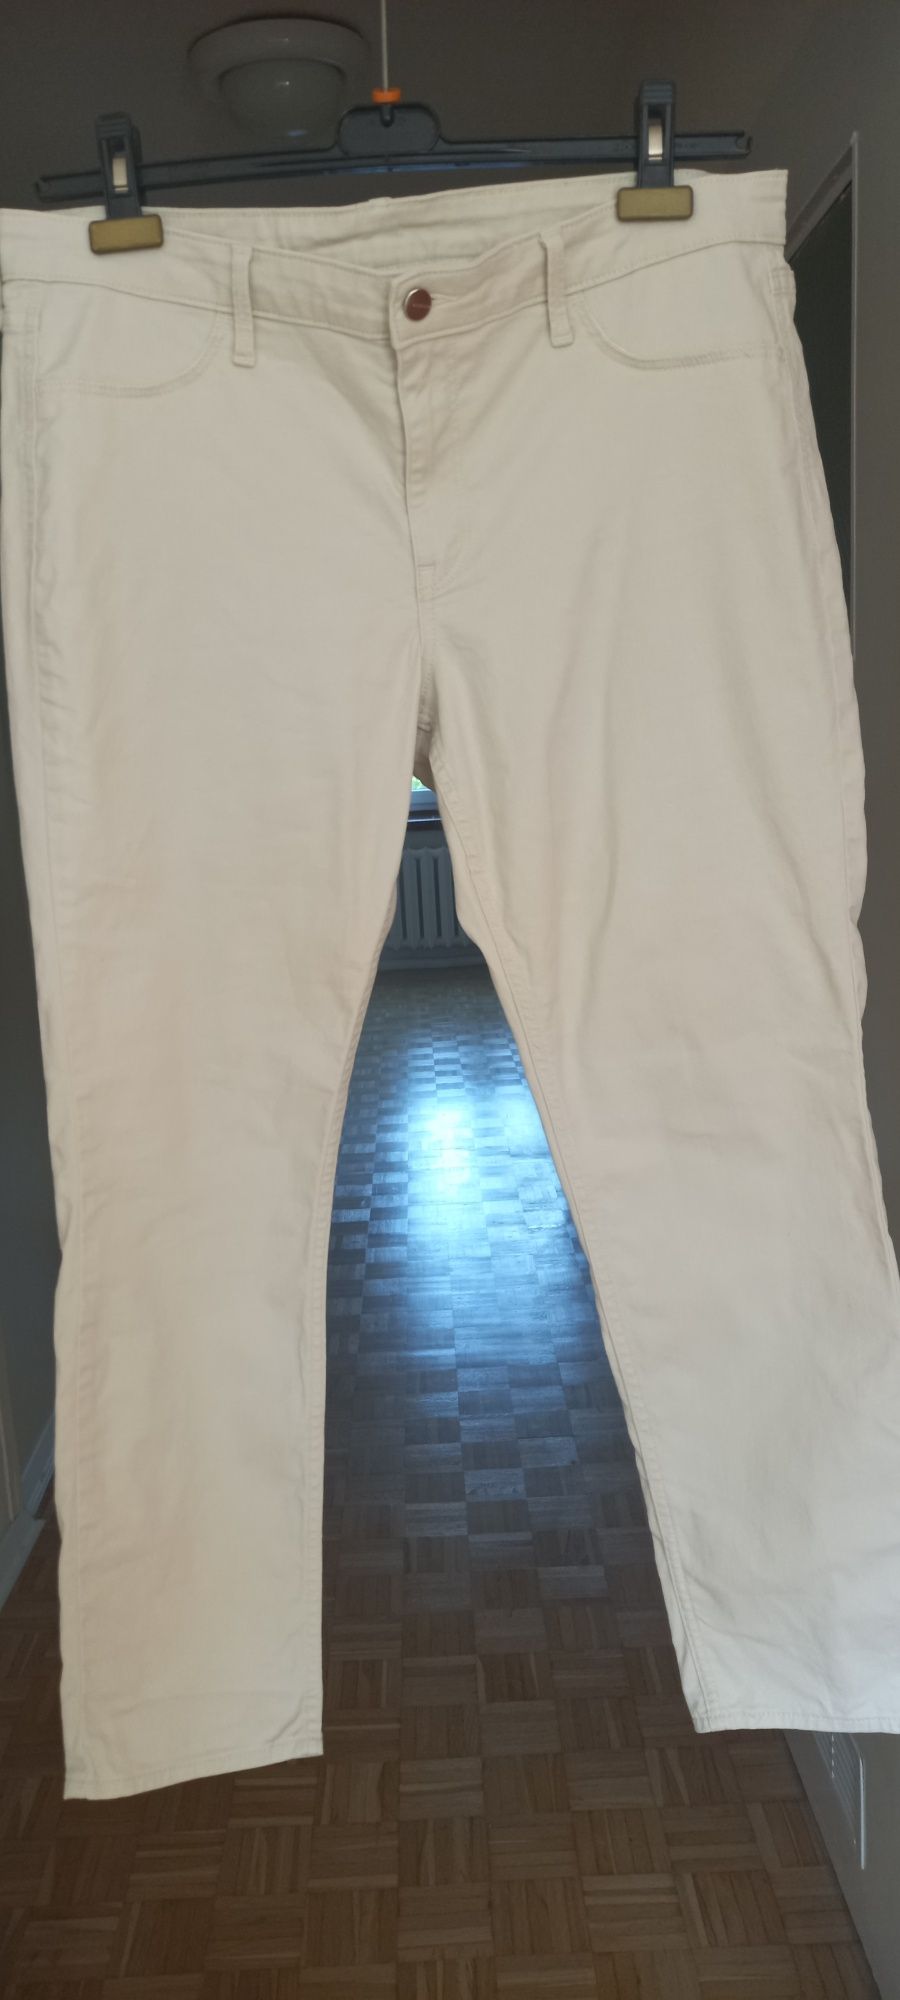 Kremowe, bawełniane jeansy skinny rozmiar 34, 176/86A firma H&M